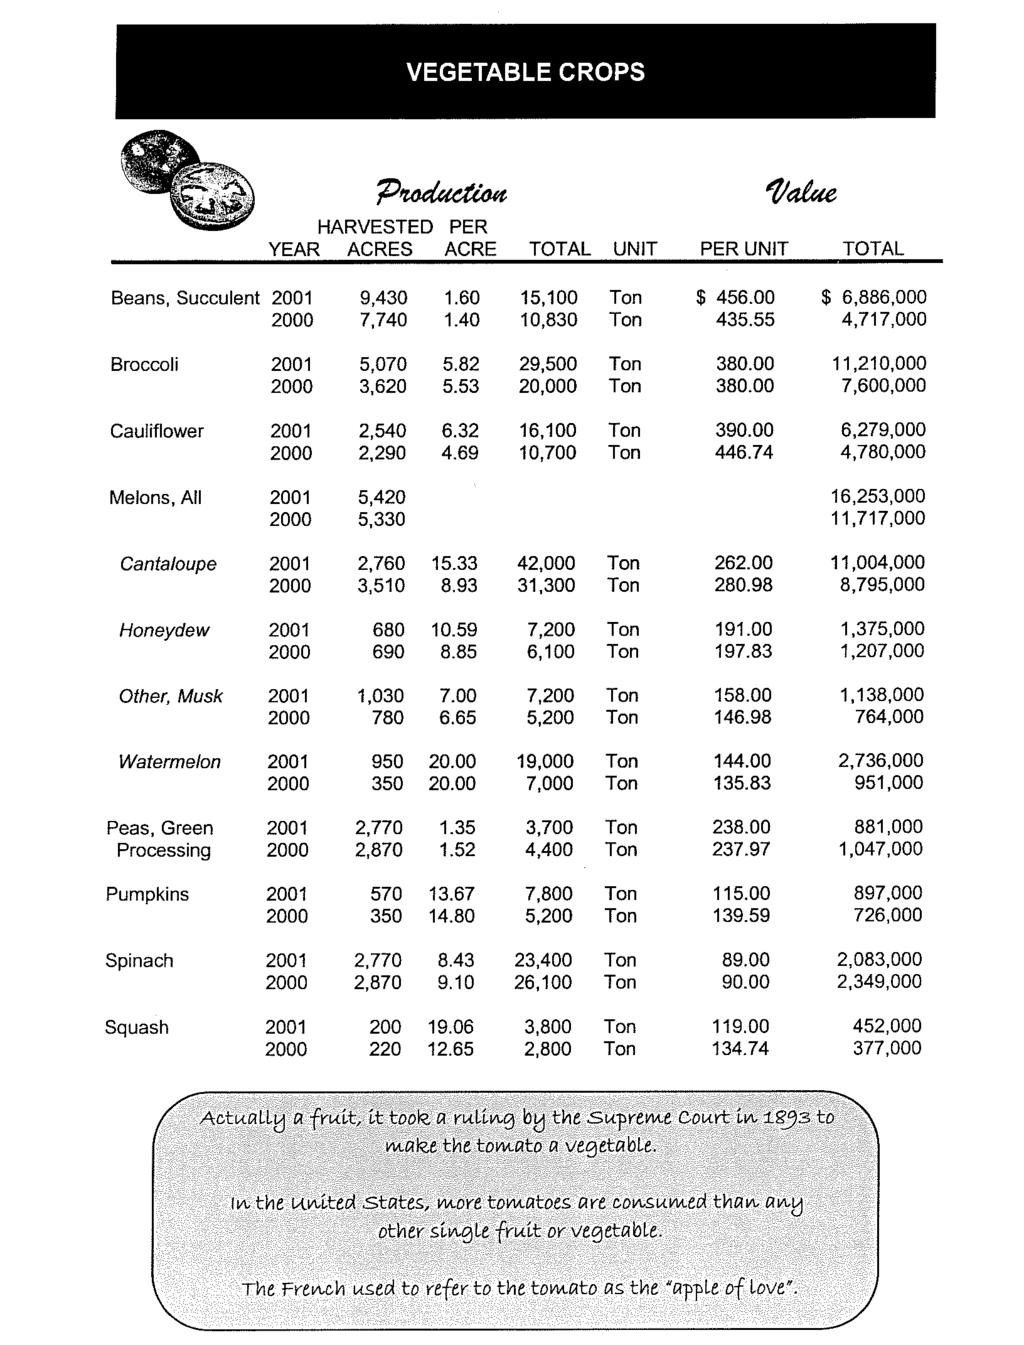 YEAR ACRES ACRE TOTAL UNIT PERUNIT TOTAL Beans, Succulent 2001 9,430 1.60 15,100 $ 456.00 $ 6,886.000 7.740 1.40 10,830 435.